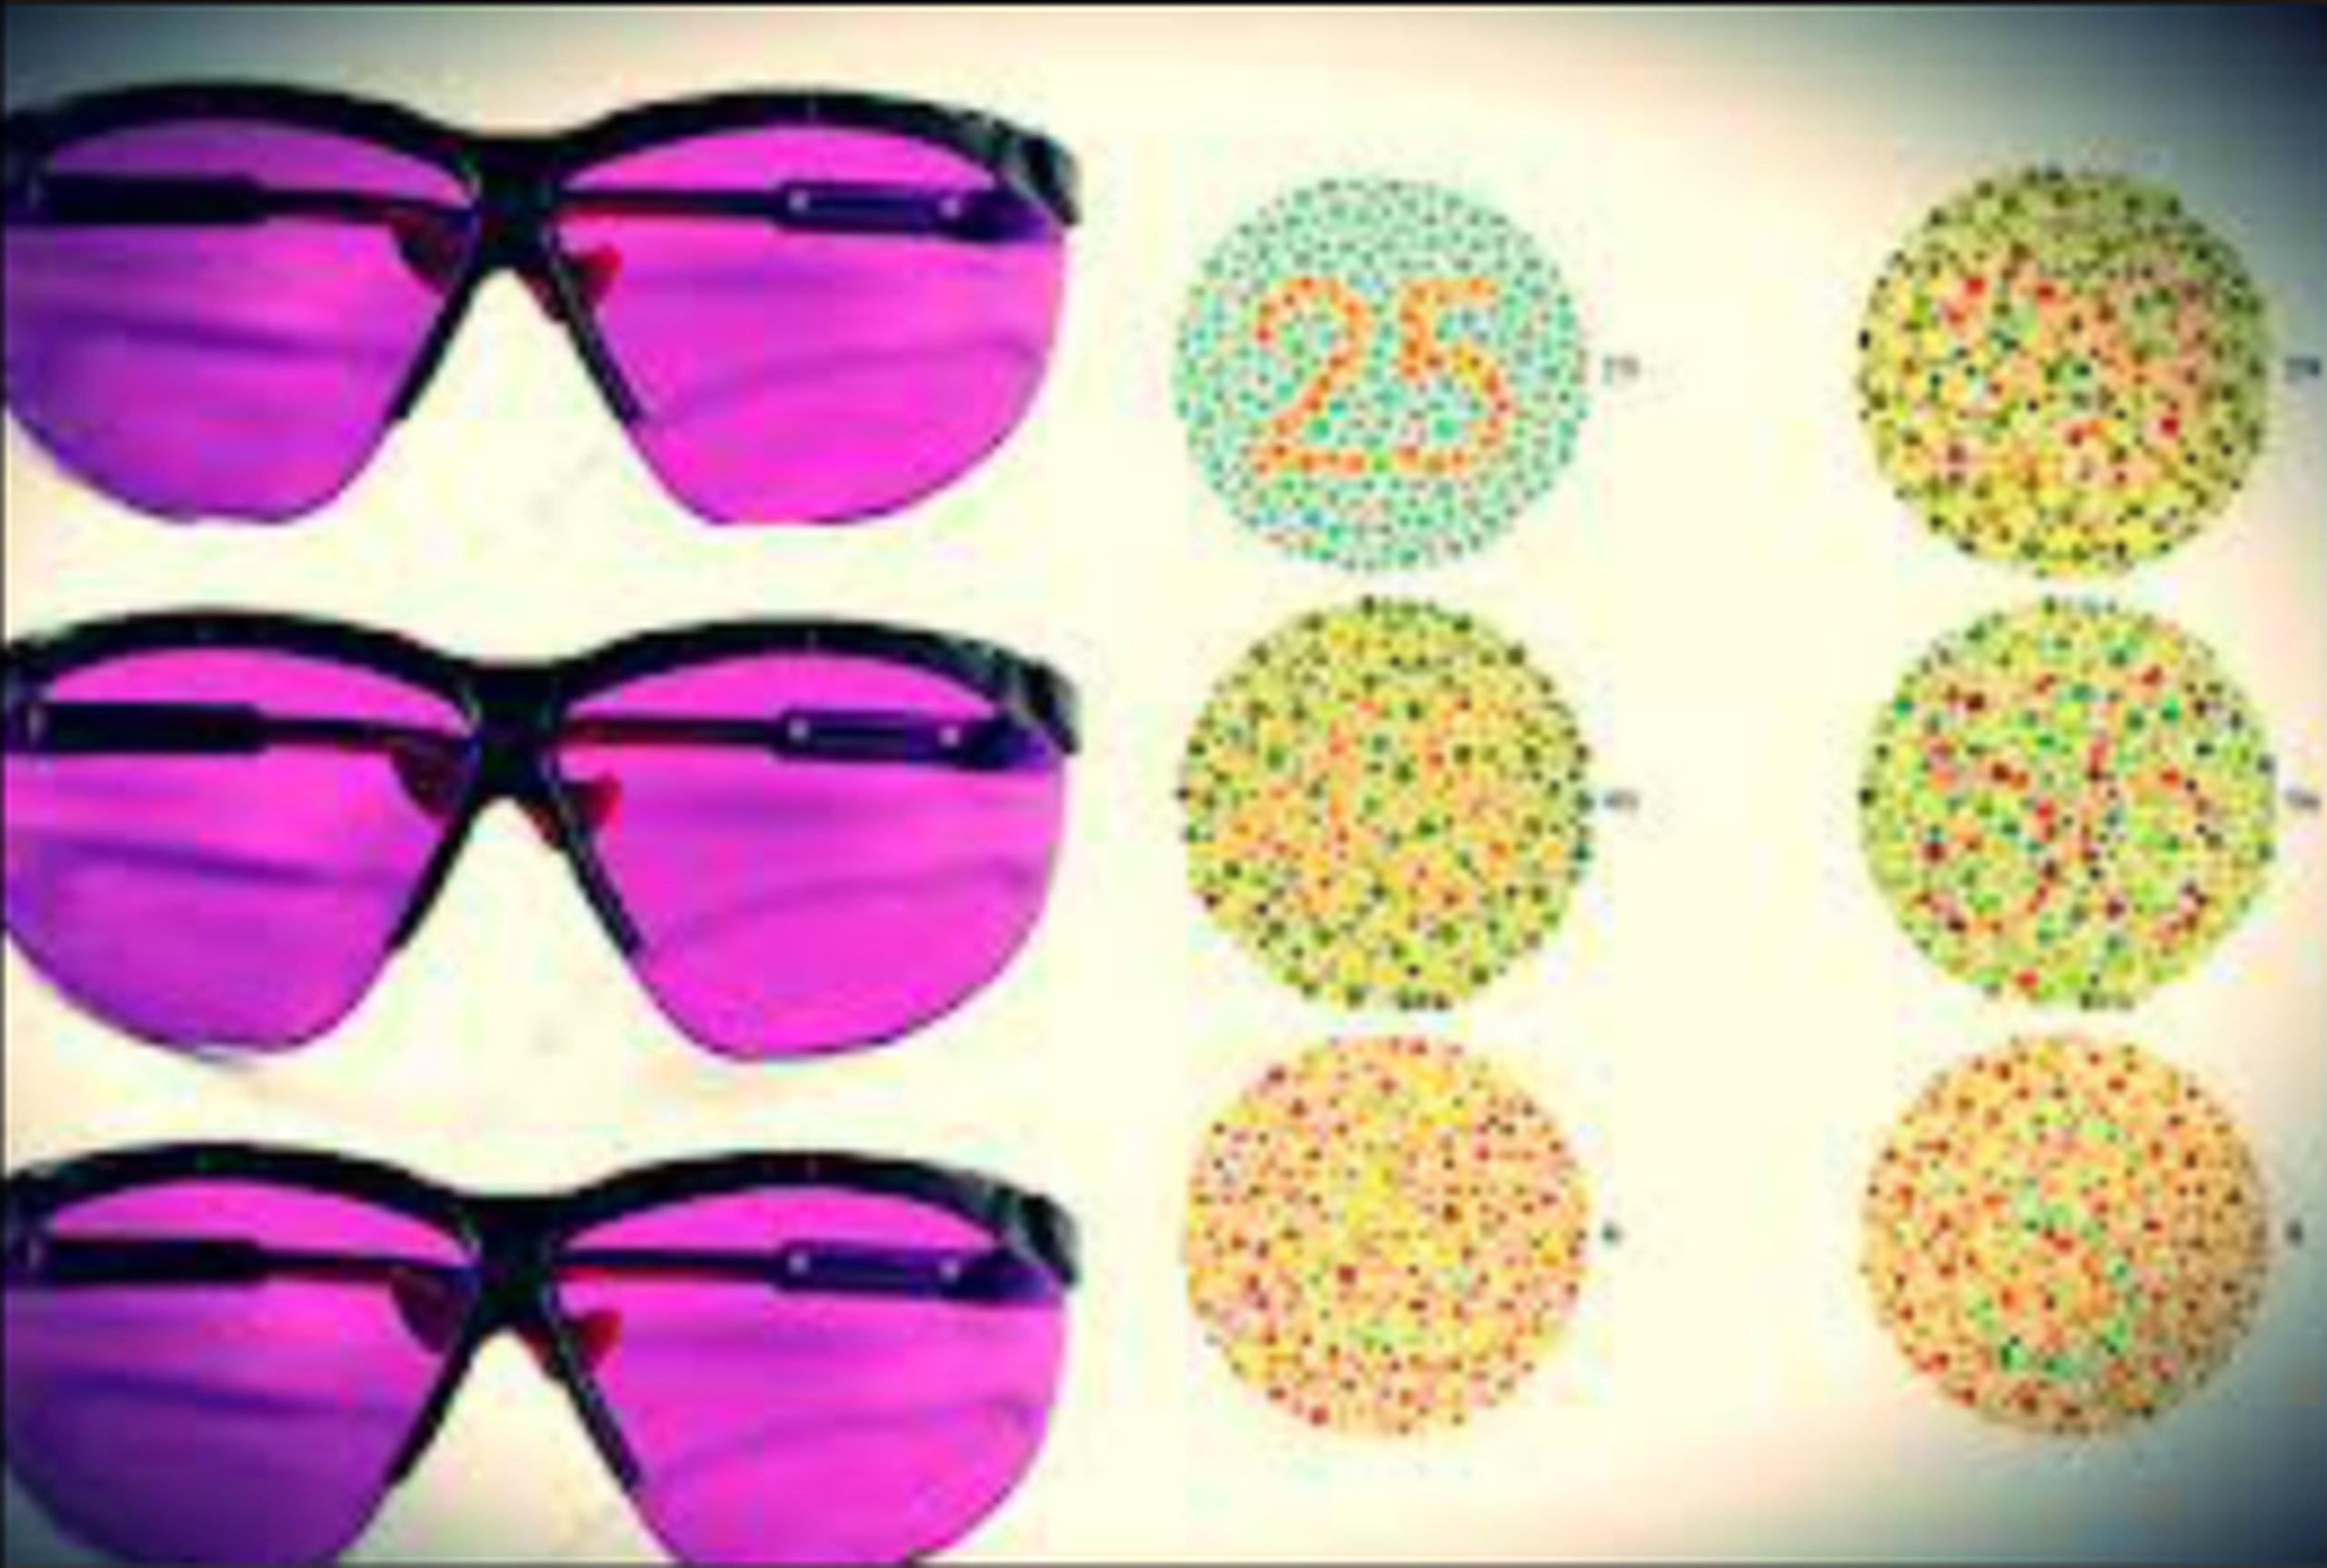 Gafas correctoras y cura biotecnológica contra el daltonismo